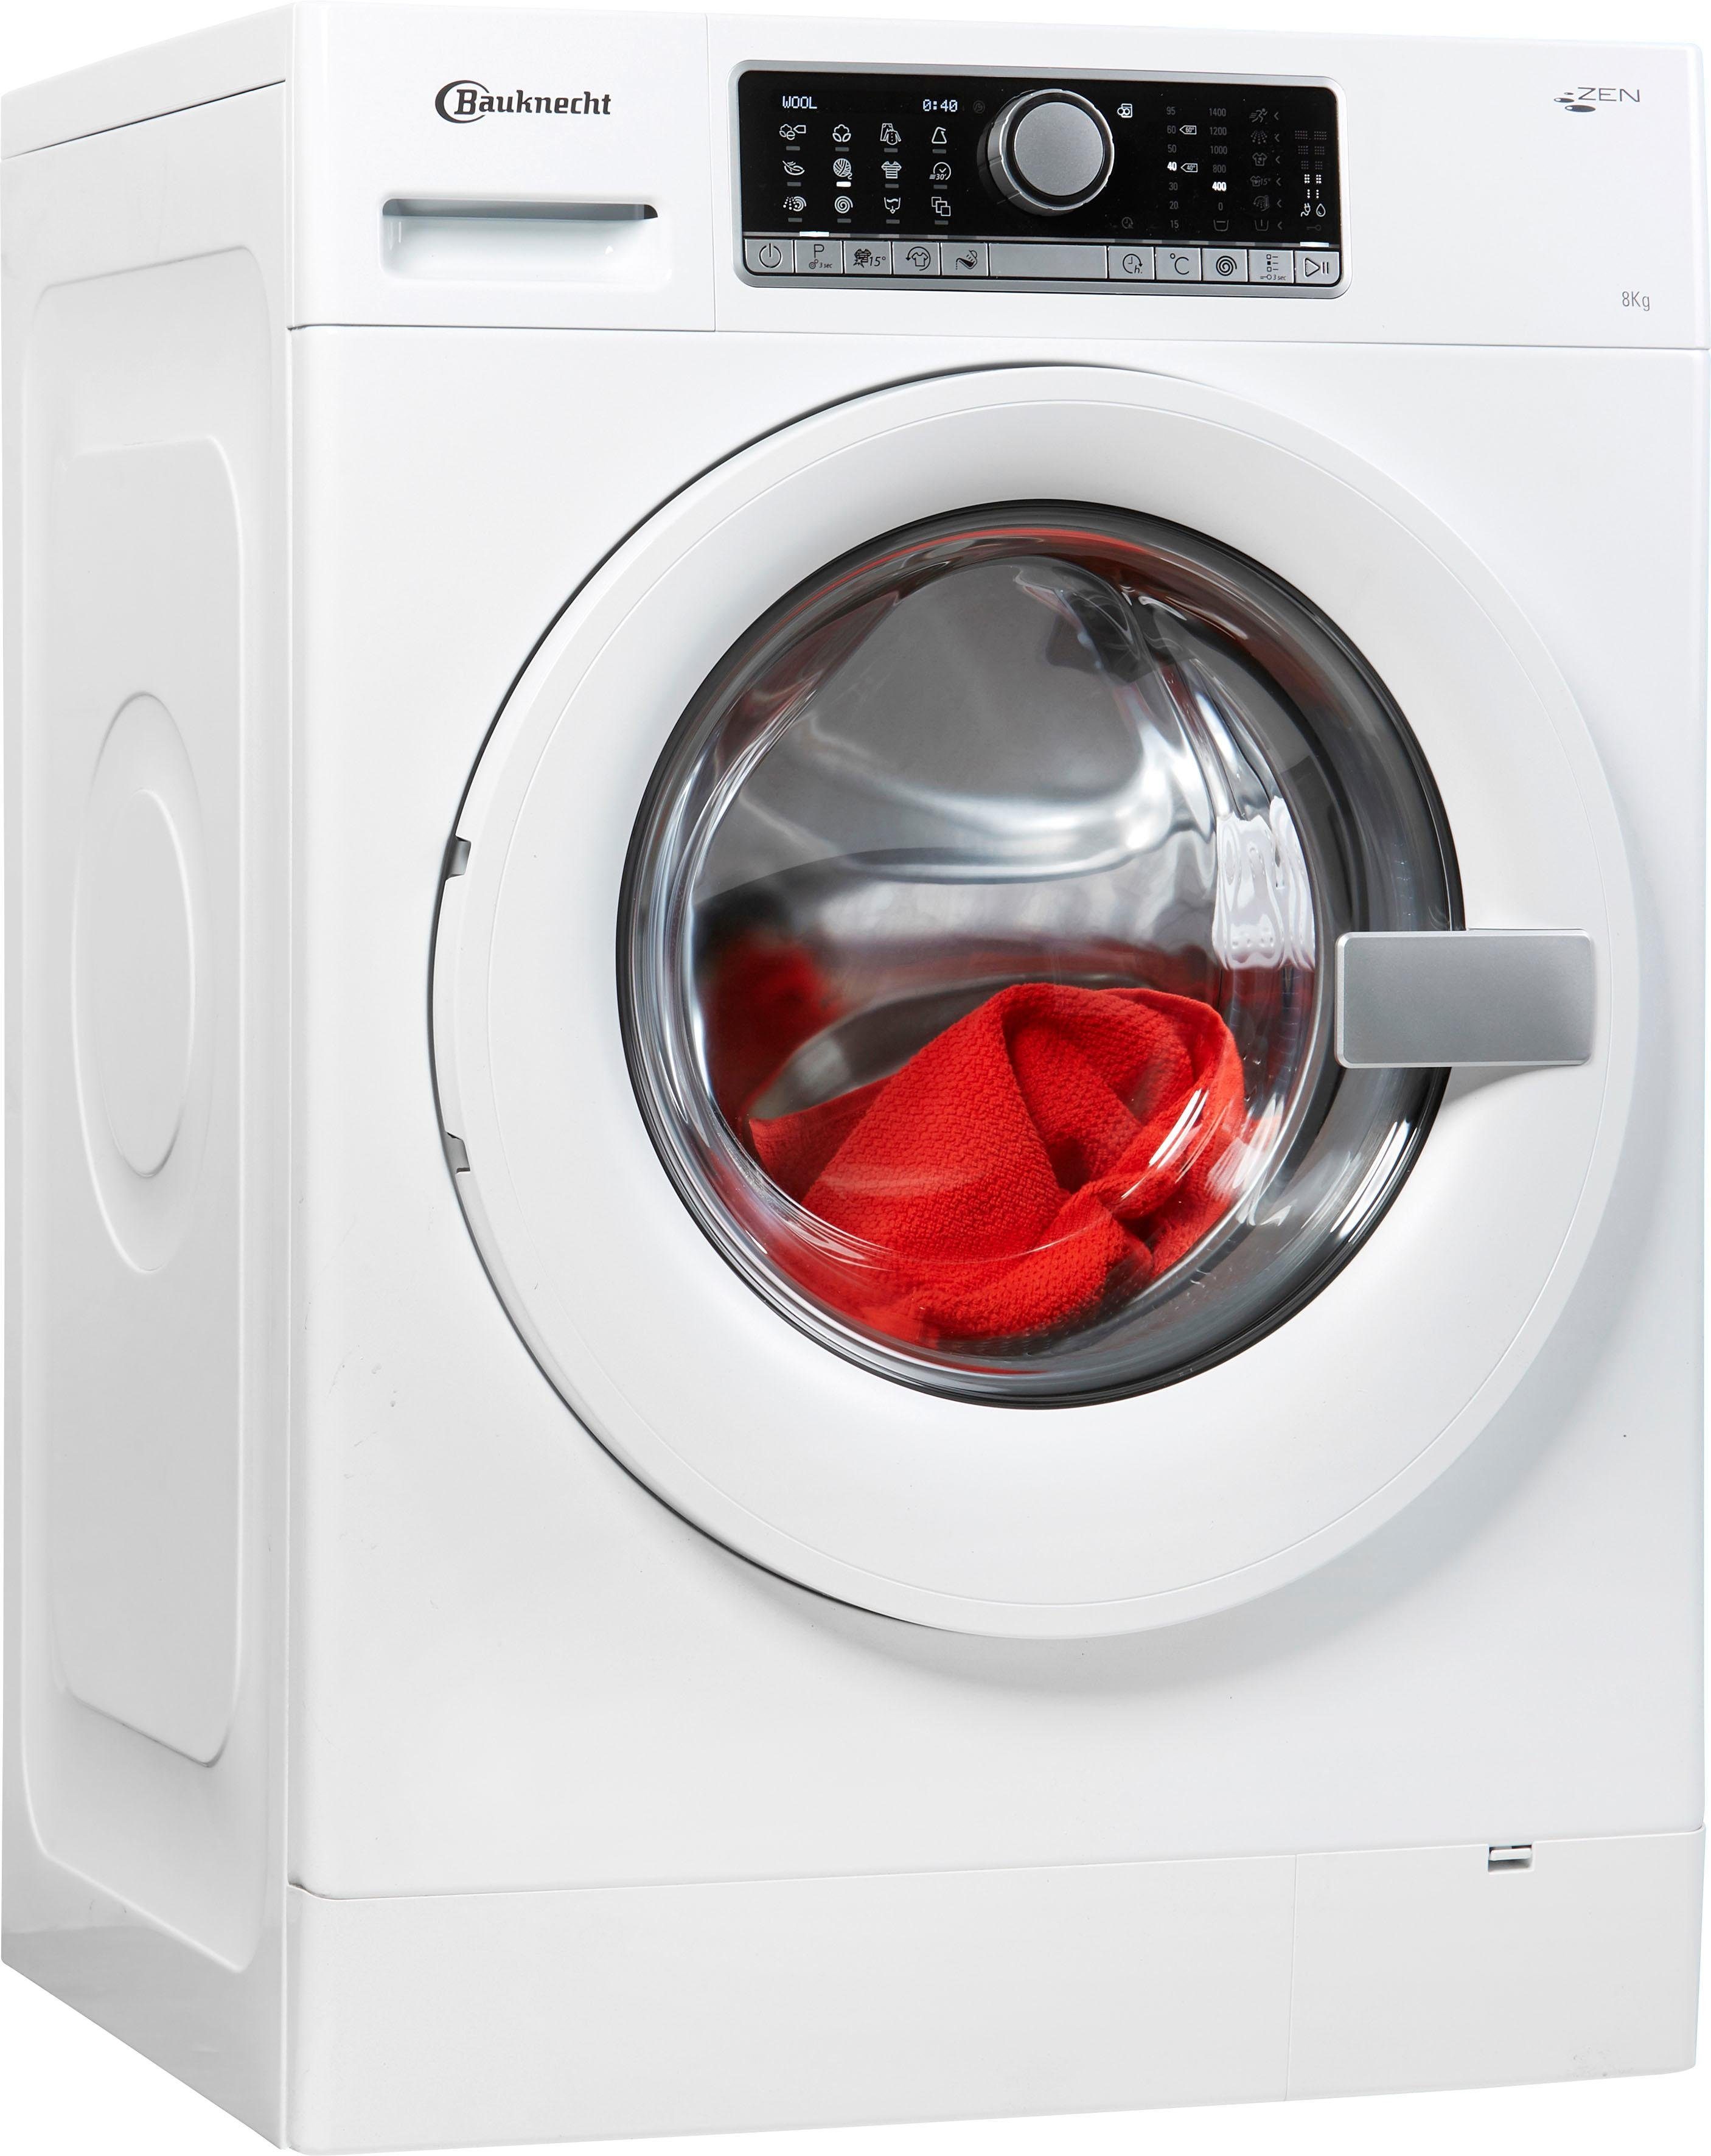 Waschmaschinen im Produktvergleich - Dataillierte Testberichte und  Usermeinungen zum BAUKNECHT WM CARE 8418 - alaTest.at